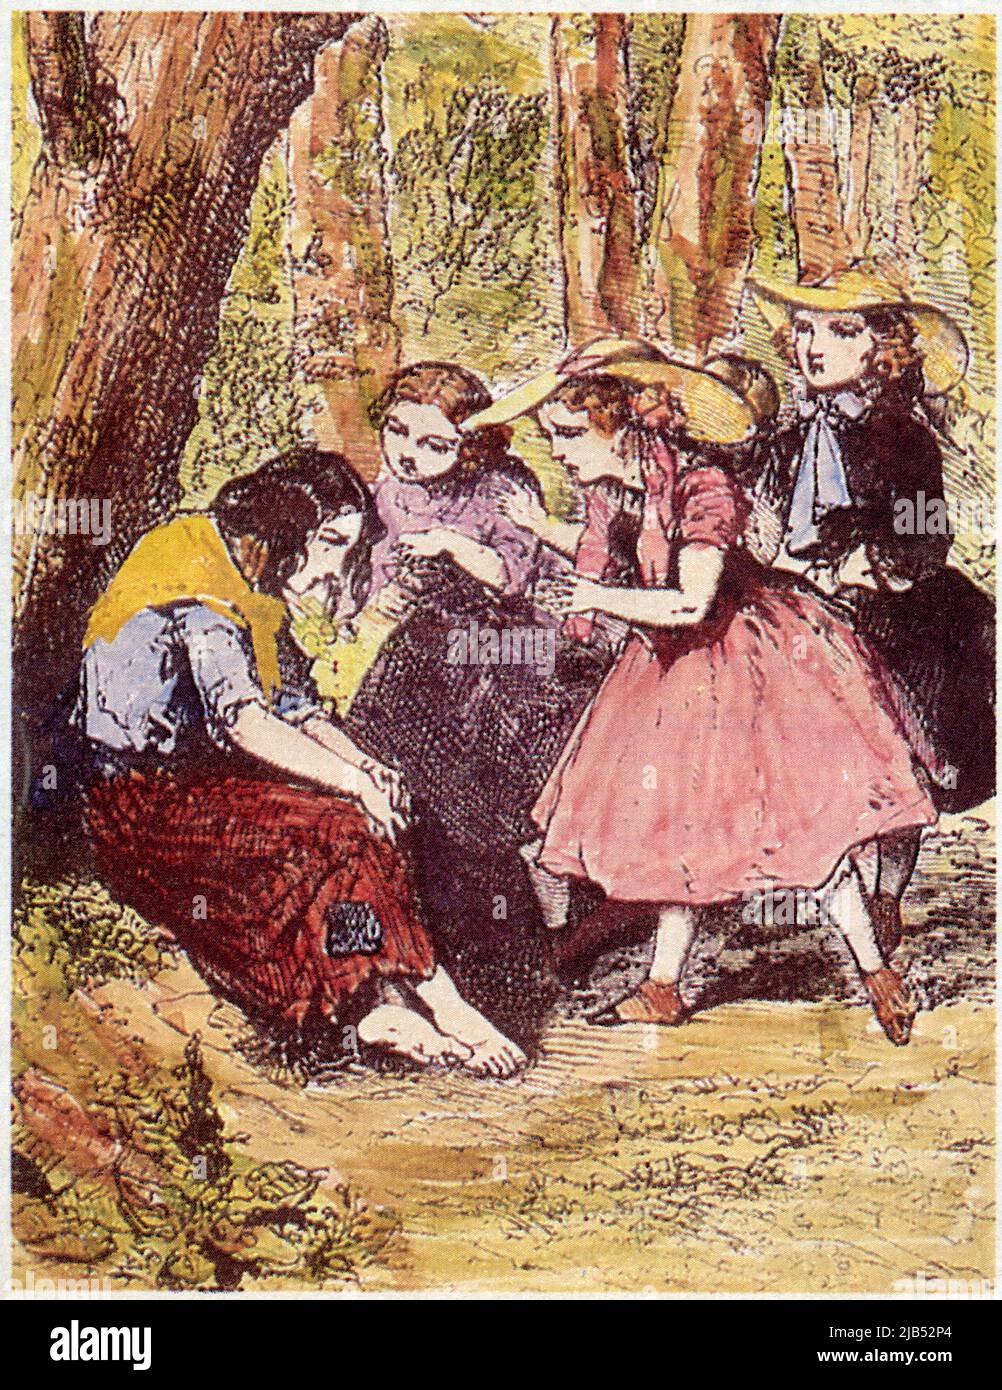 Une gravure qui illustre un épisode des Petites Filles modèles, l'un des Plus célèbres ouvrages de la comtesse de Ségur. Foto Stock